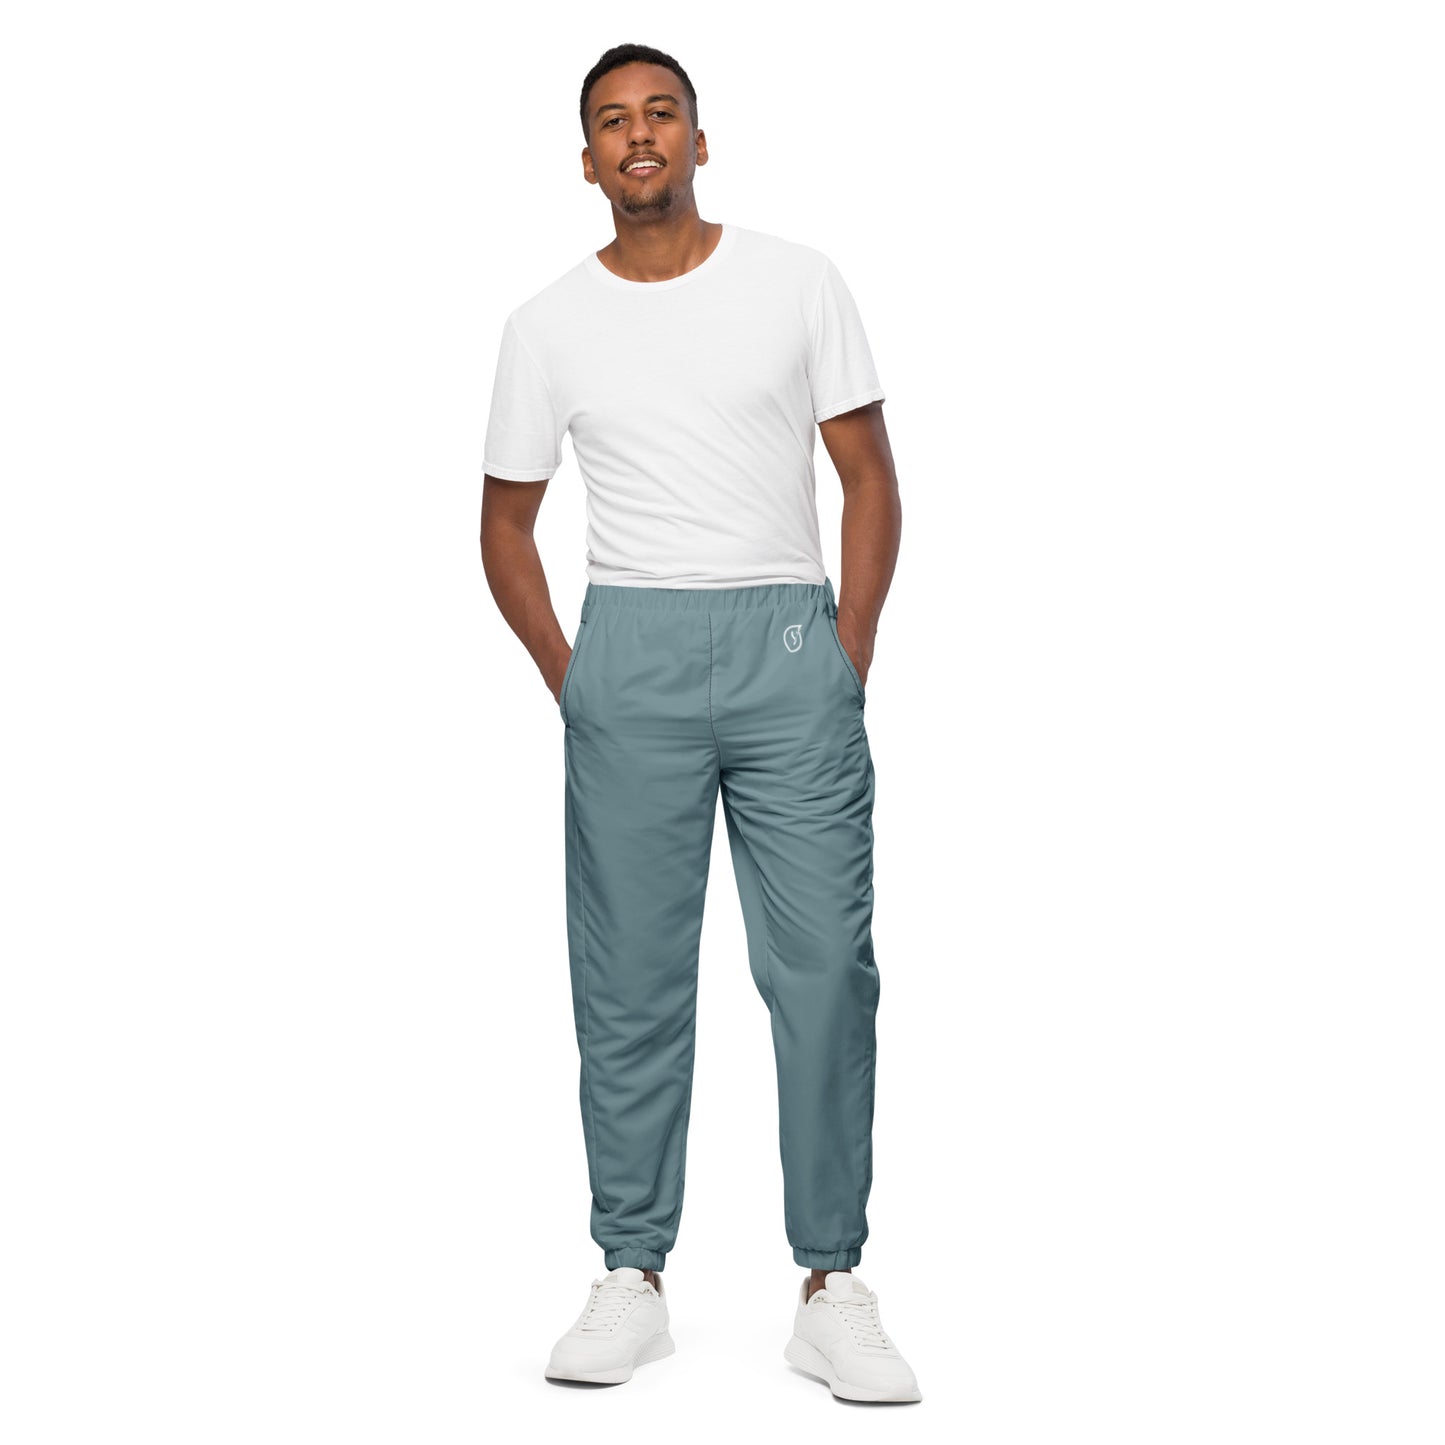 Humble Sportswear™ Men's Steel Blue Track Pants - Mireille Fine Art